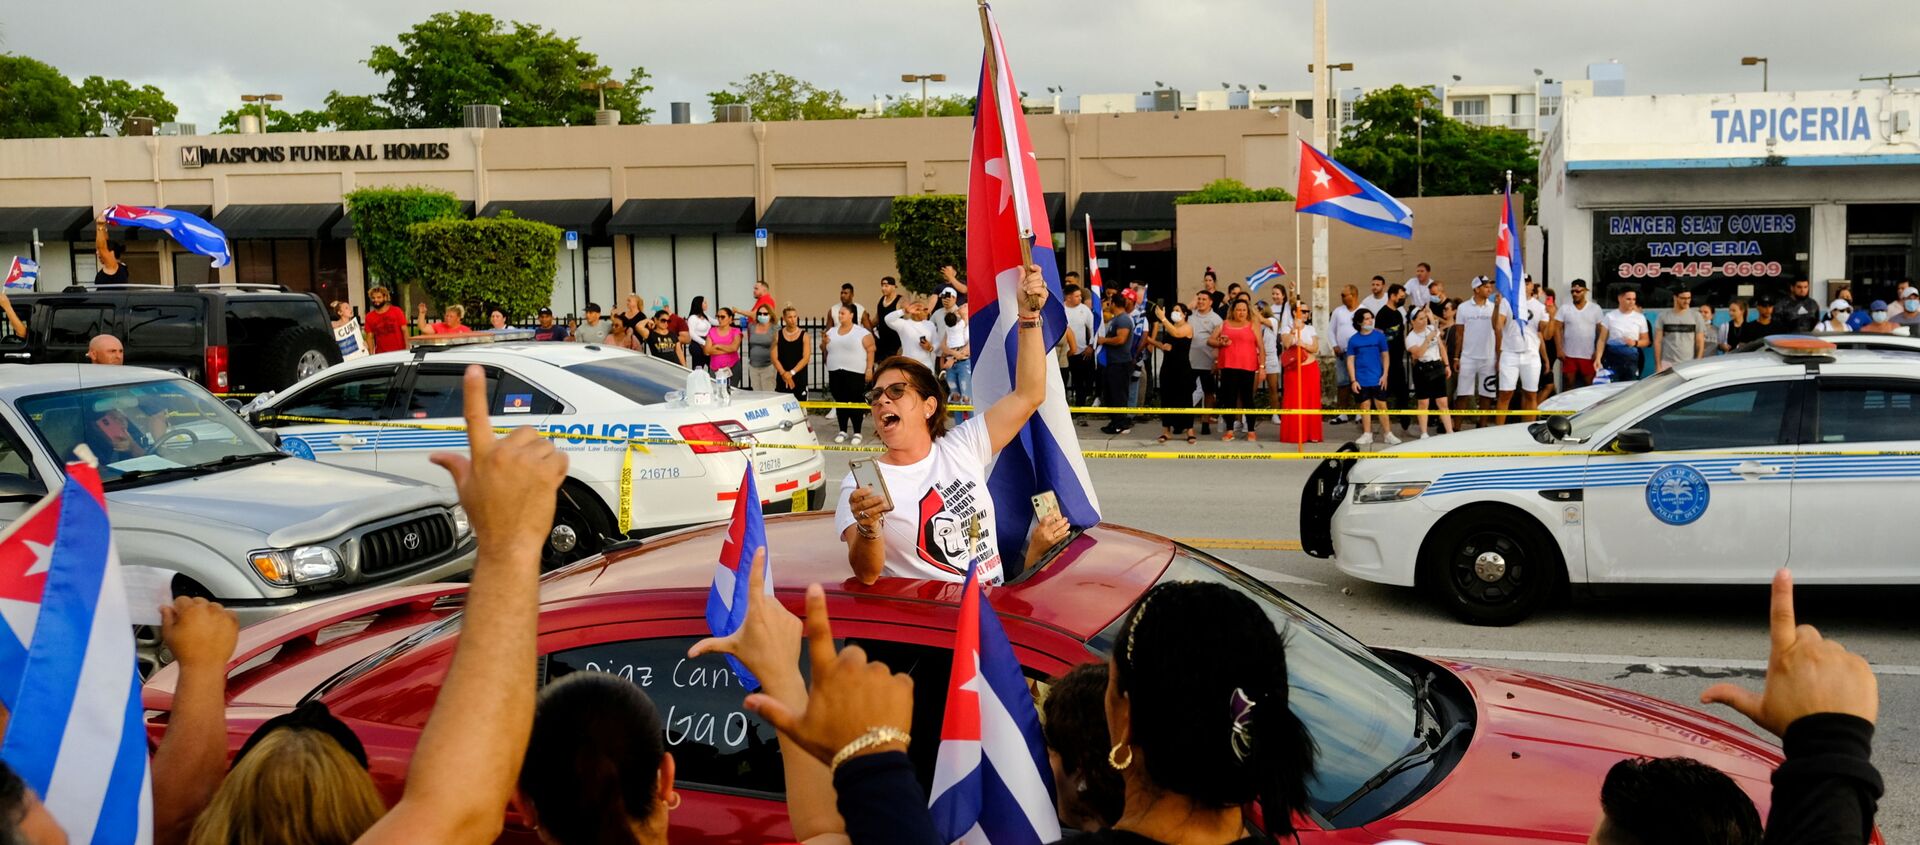 Mít tinh biểu thị tình đoàn kết với những người biểu tình ở Cuba tại Little Havana, ngoại ô Miami, bang Florida, Hoa Kỳ, 12/7/2021 - Sputnik Việt Nam, 1920, 14.07.2021